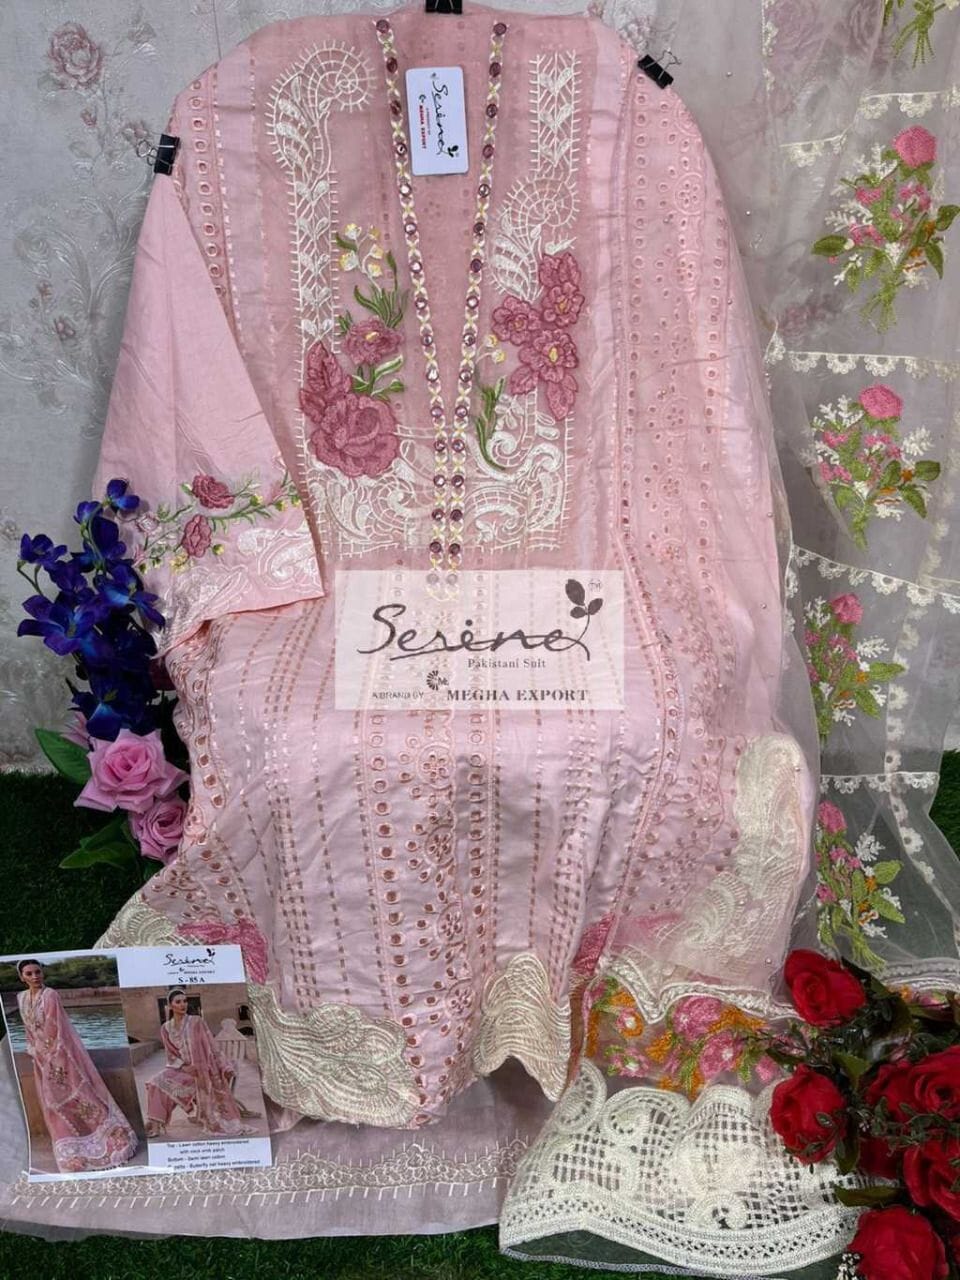 S 85A Designer Lawn Cotton Pakistani Suit Designer Suits Serene 